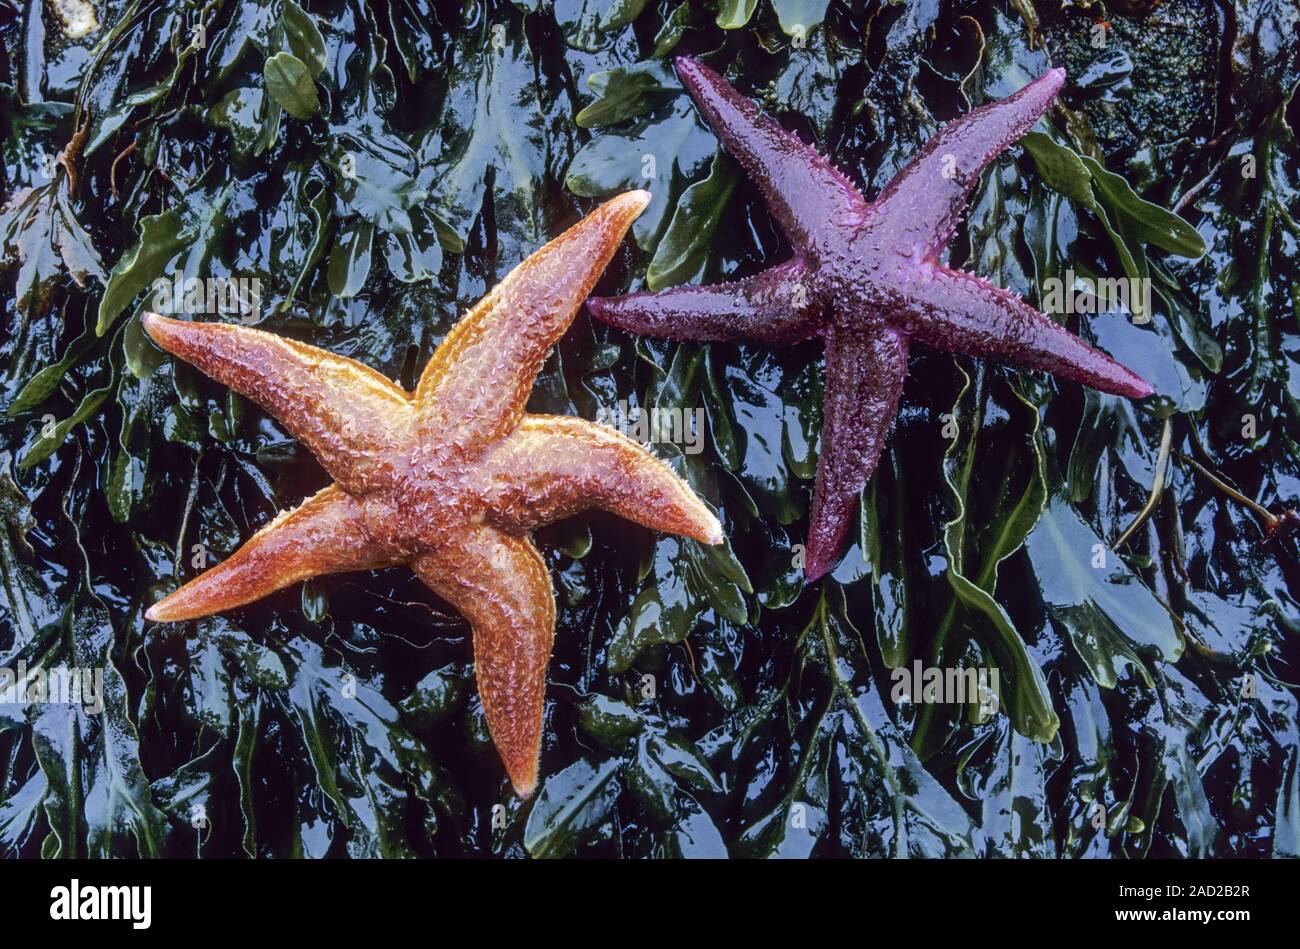 Starfish comune, la dimensione normale è 10 a 30cm, ma esemplari di grandi dimensioni fino a 52cm sono noti Foto Stock